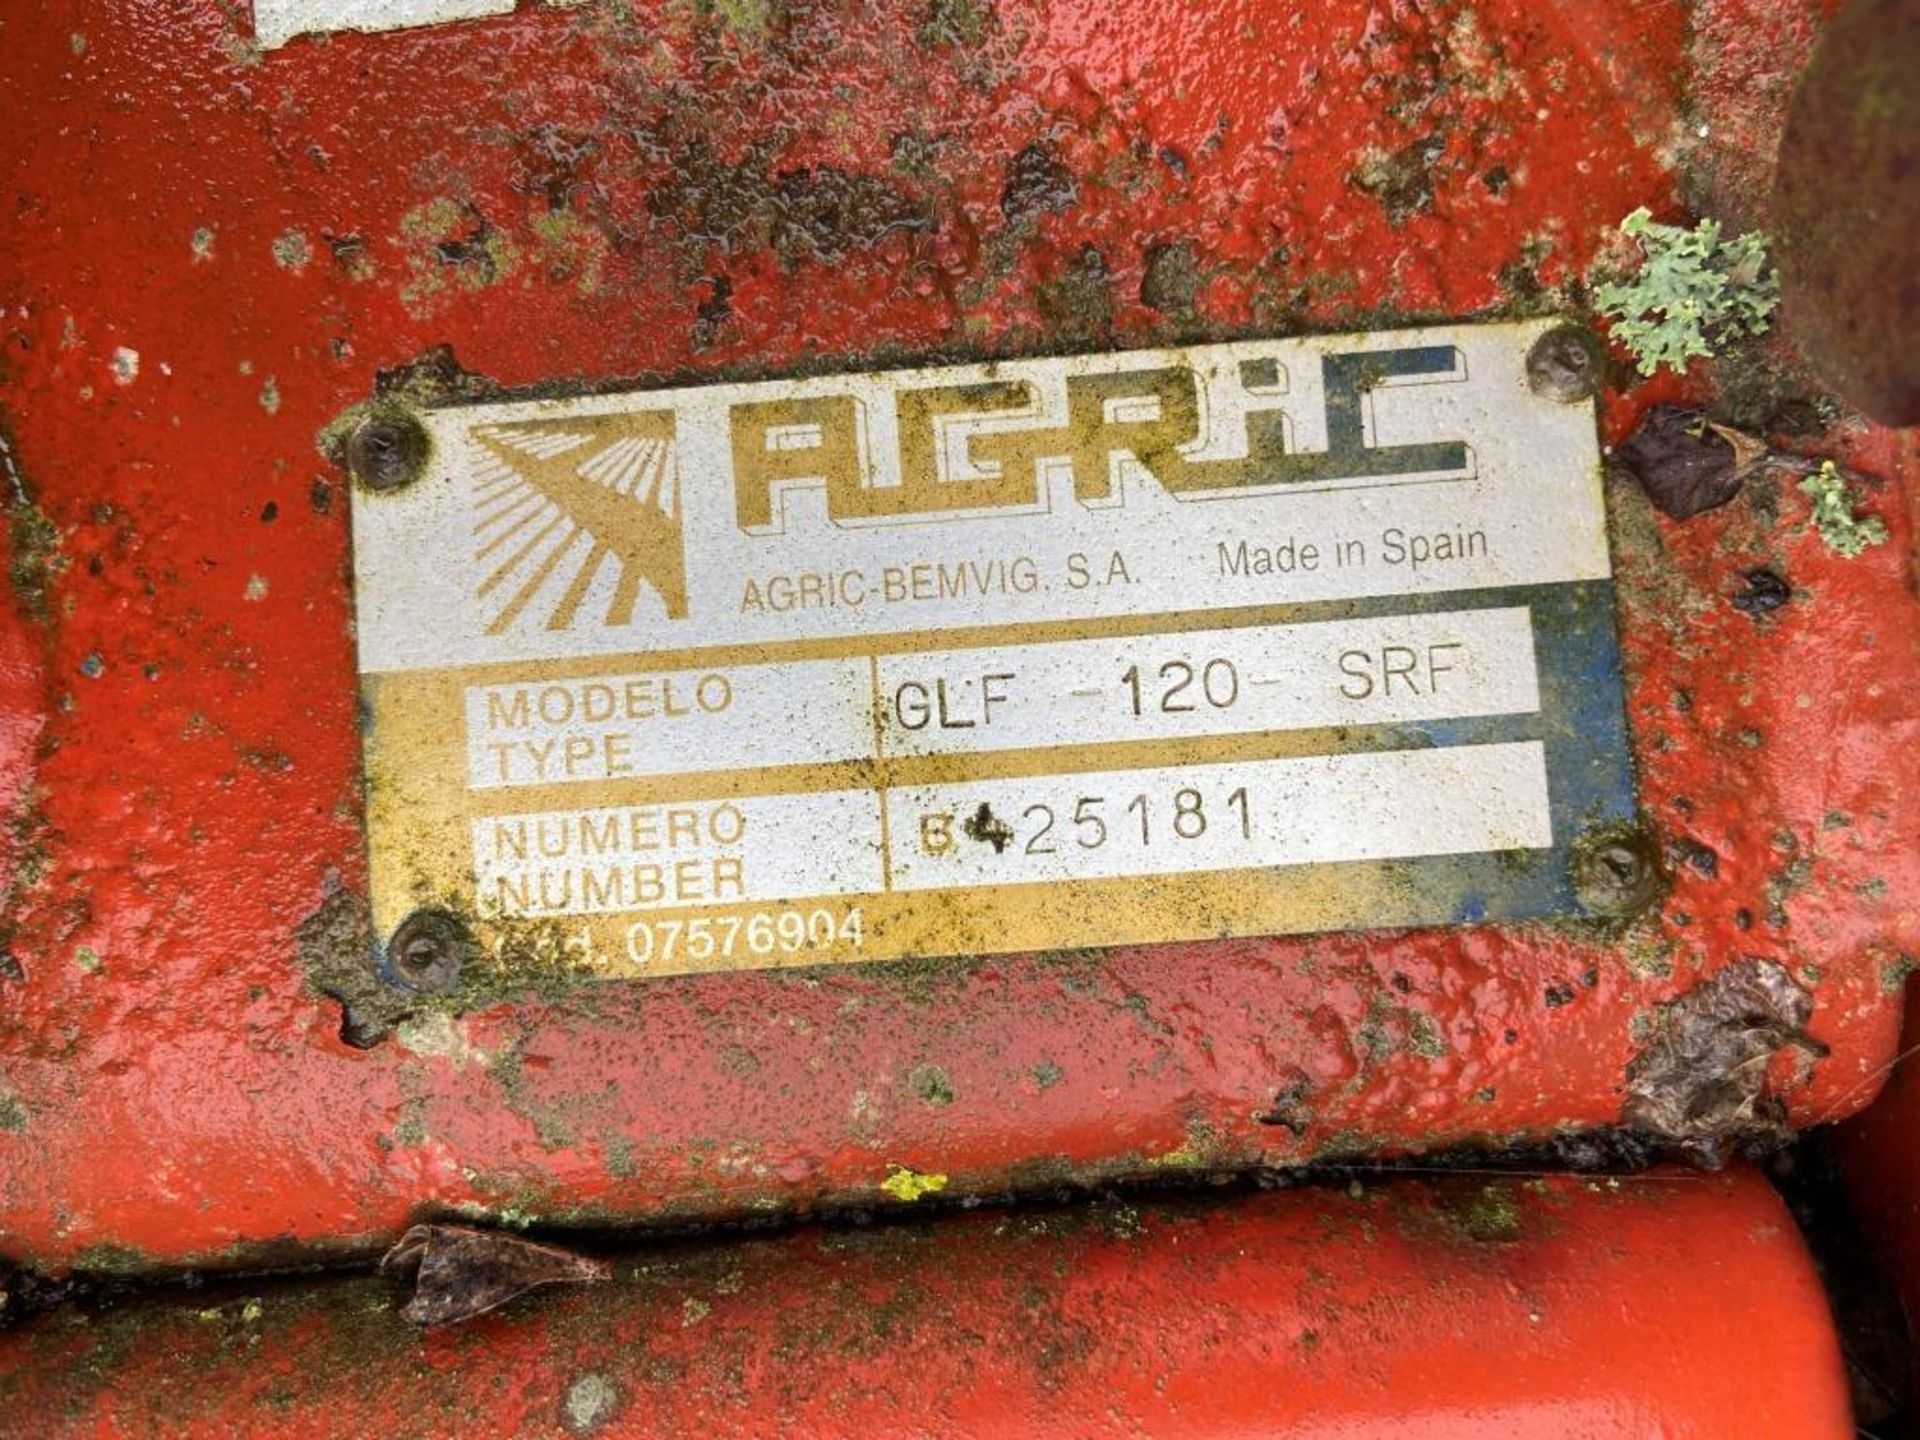 Agric SRF 120 rotavator - Image 4 of 4